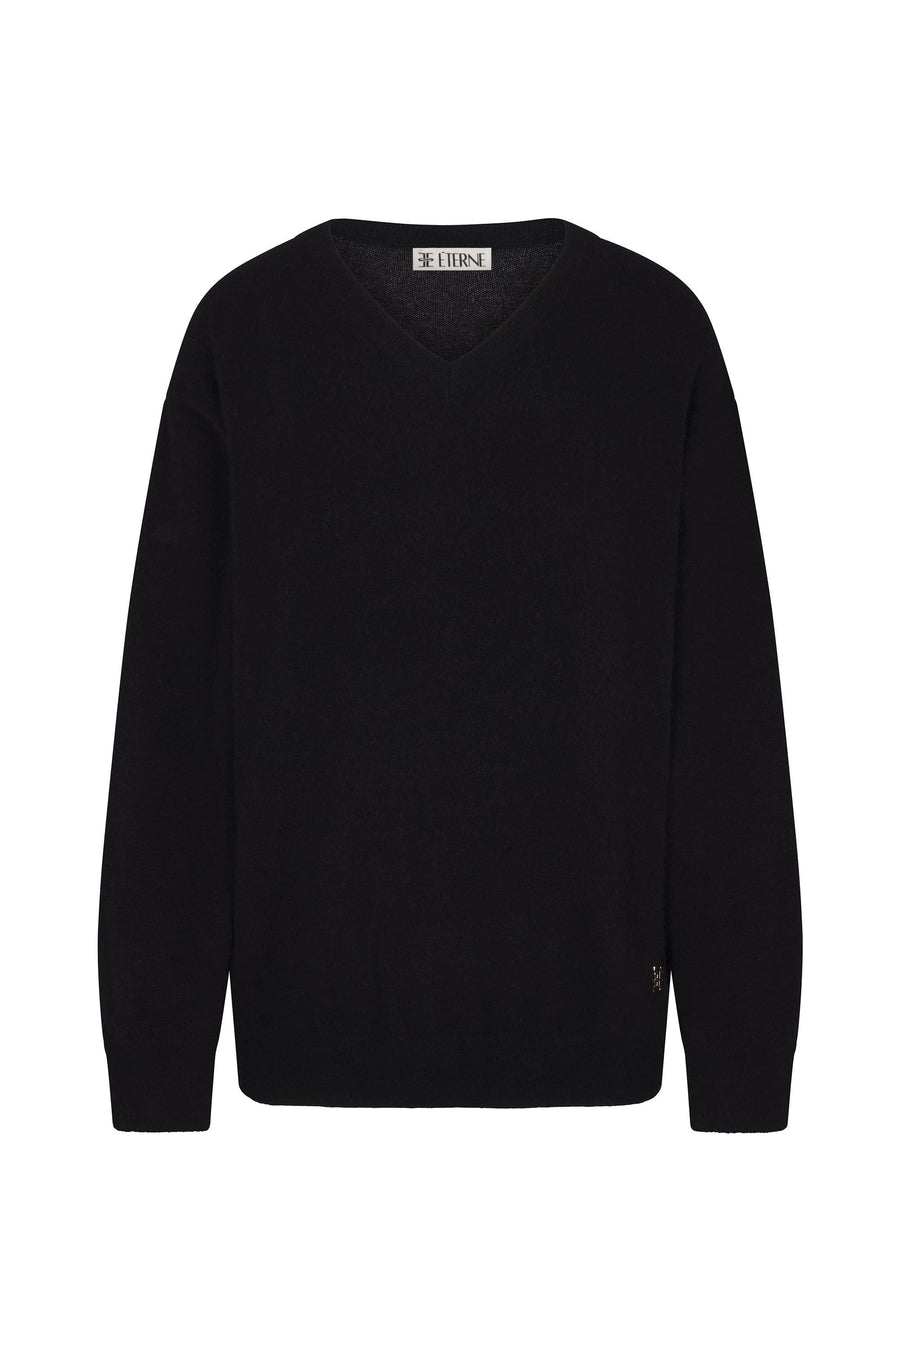 Clive V-Neck Sweater Black SWEATERS ÉTERNE 